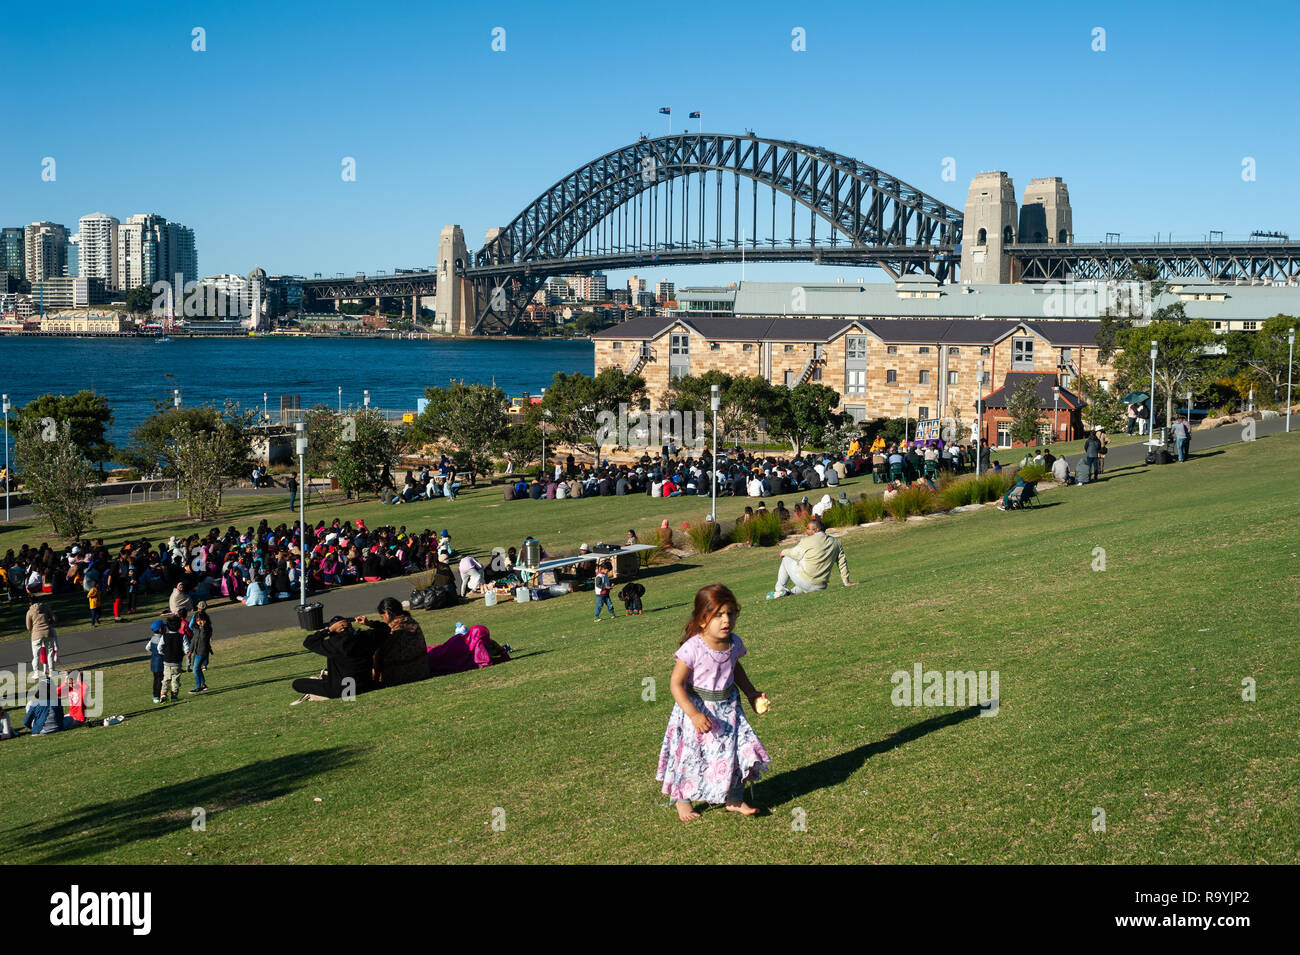 16.09.2018, Sydney, New South Wales, Australien - Menschen geniessen ein sonniges Wochenende im Headland Park in Barangaroo mit Blick auf die Sydney H Stock Photo